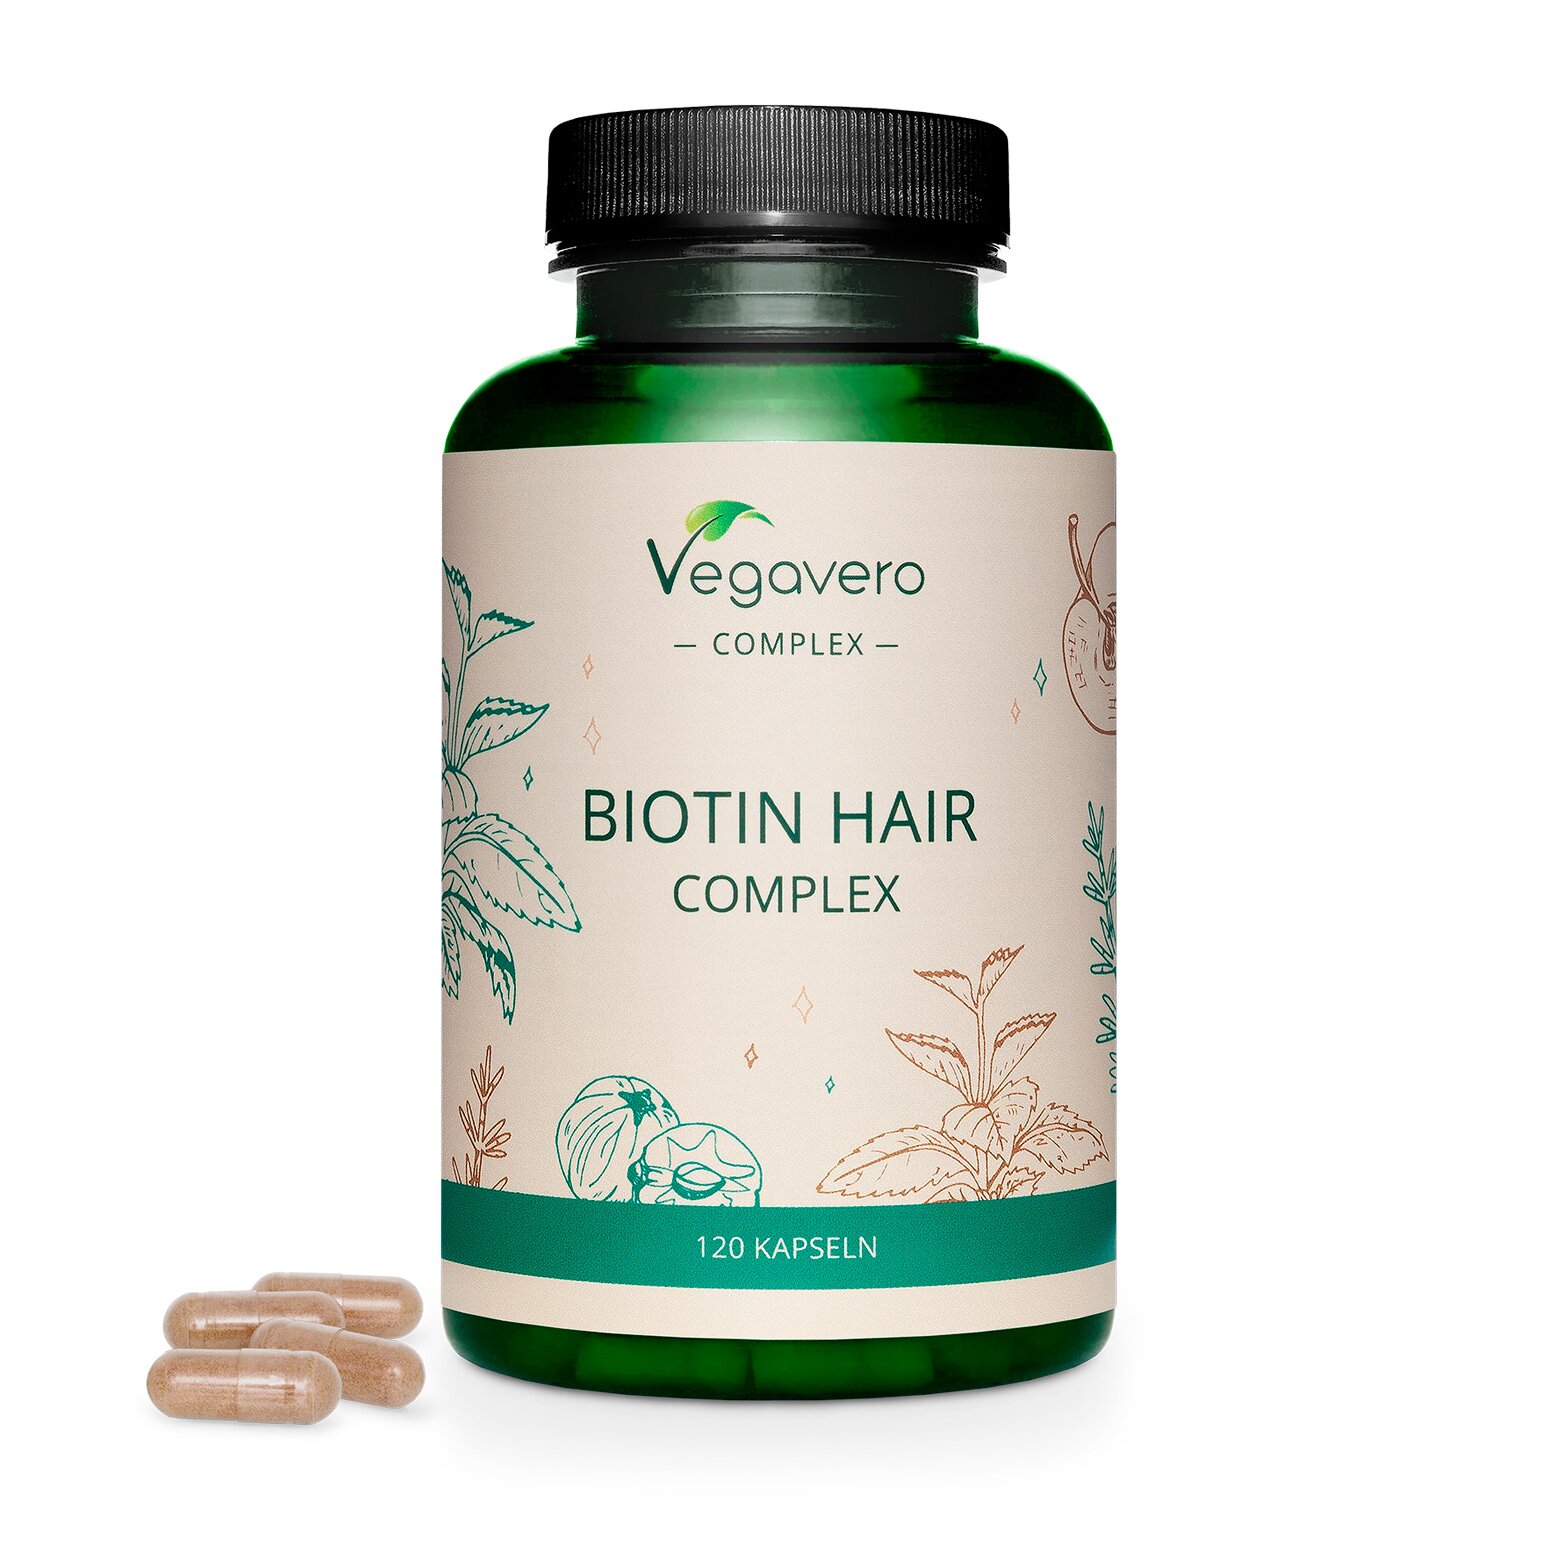 Vegavero Biotin Plus | 120 Kapseln | Natürliche Haarpflege | Vegan & Ohne Synthetische Zusätze